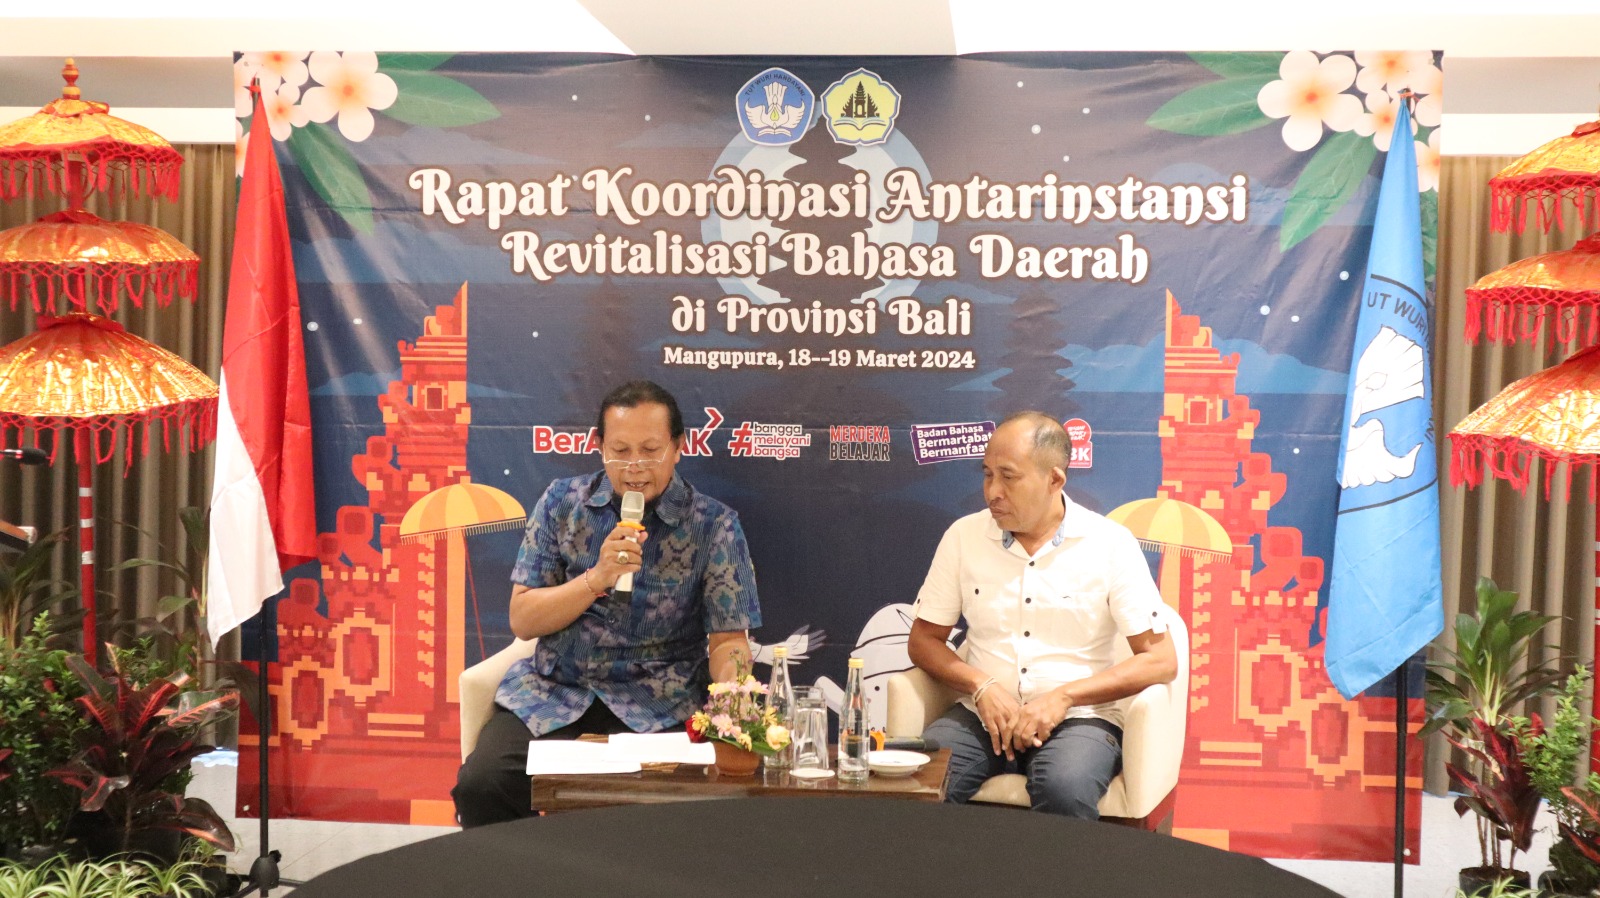 Rapat Koordinasi Revitalisasi Bahasa Daerah (RBD) di Provinsi Bali: Sinergisitas Pemerintah Pusat dan Daerah dalam Melestarikan Bahasa Bali